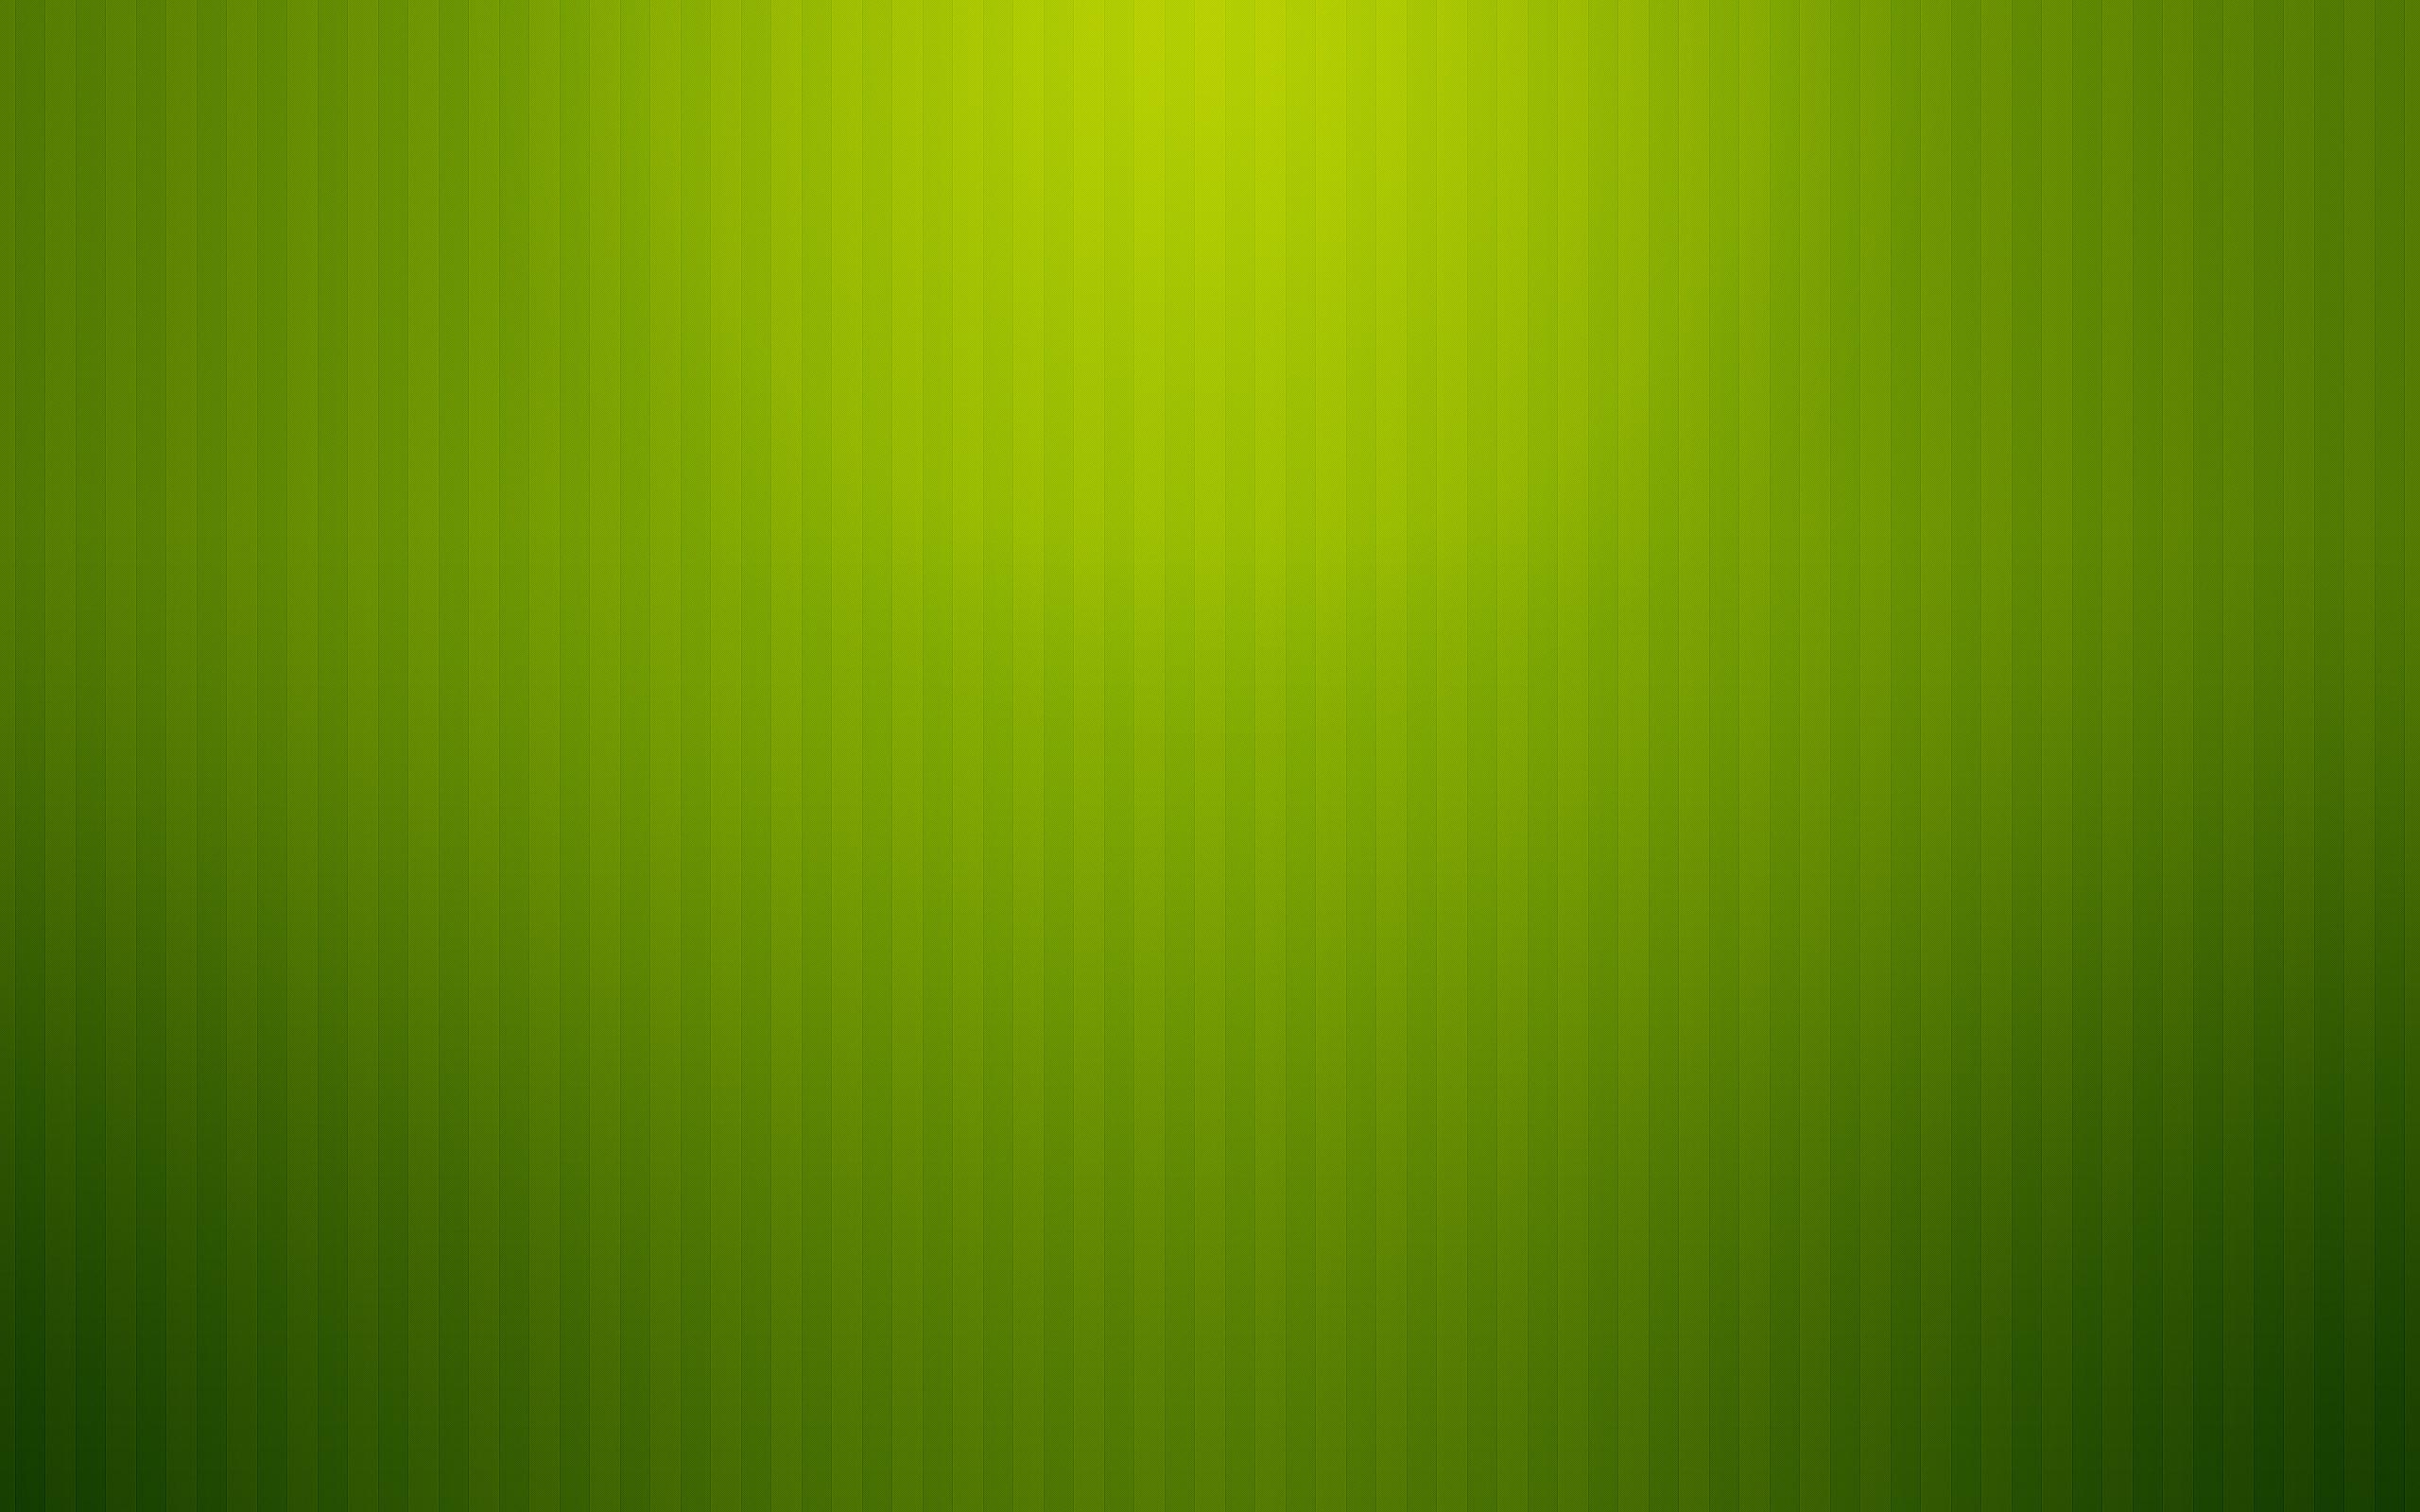 Plain Wallpaper For Desktop Background Full Screen Green Light